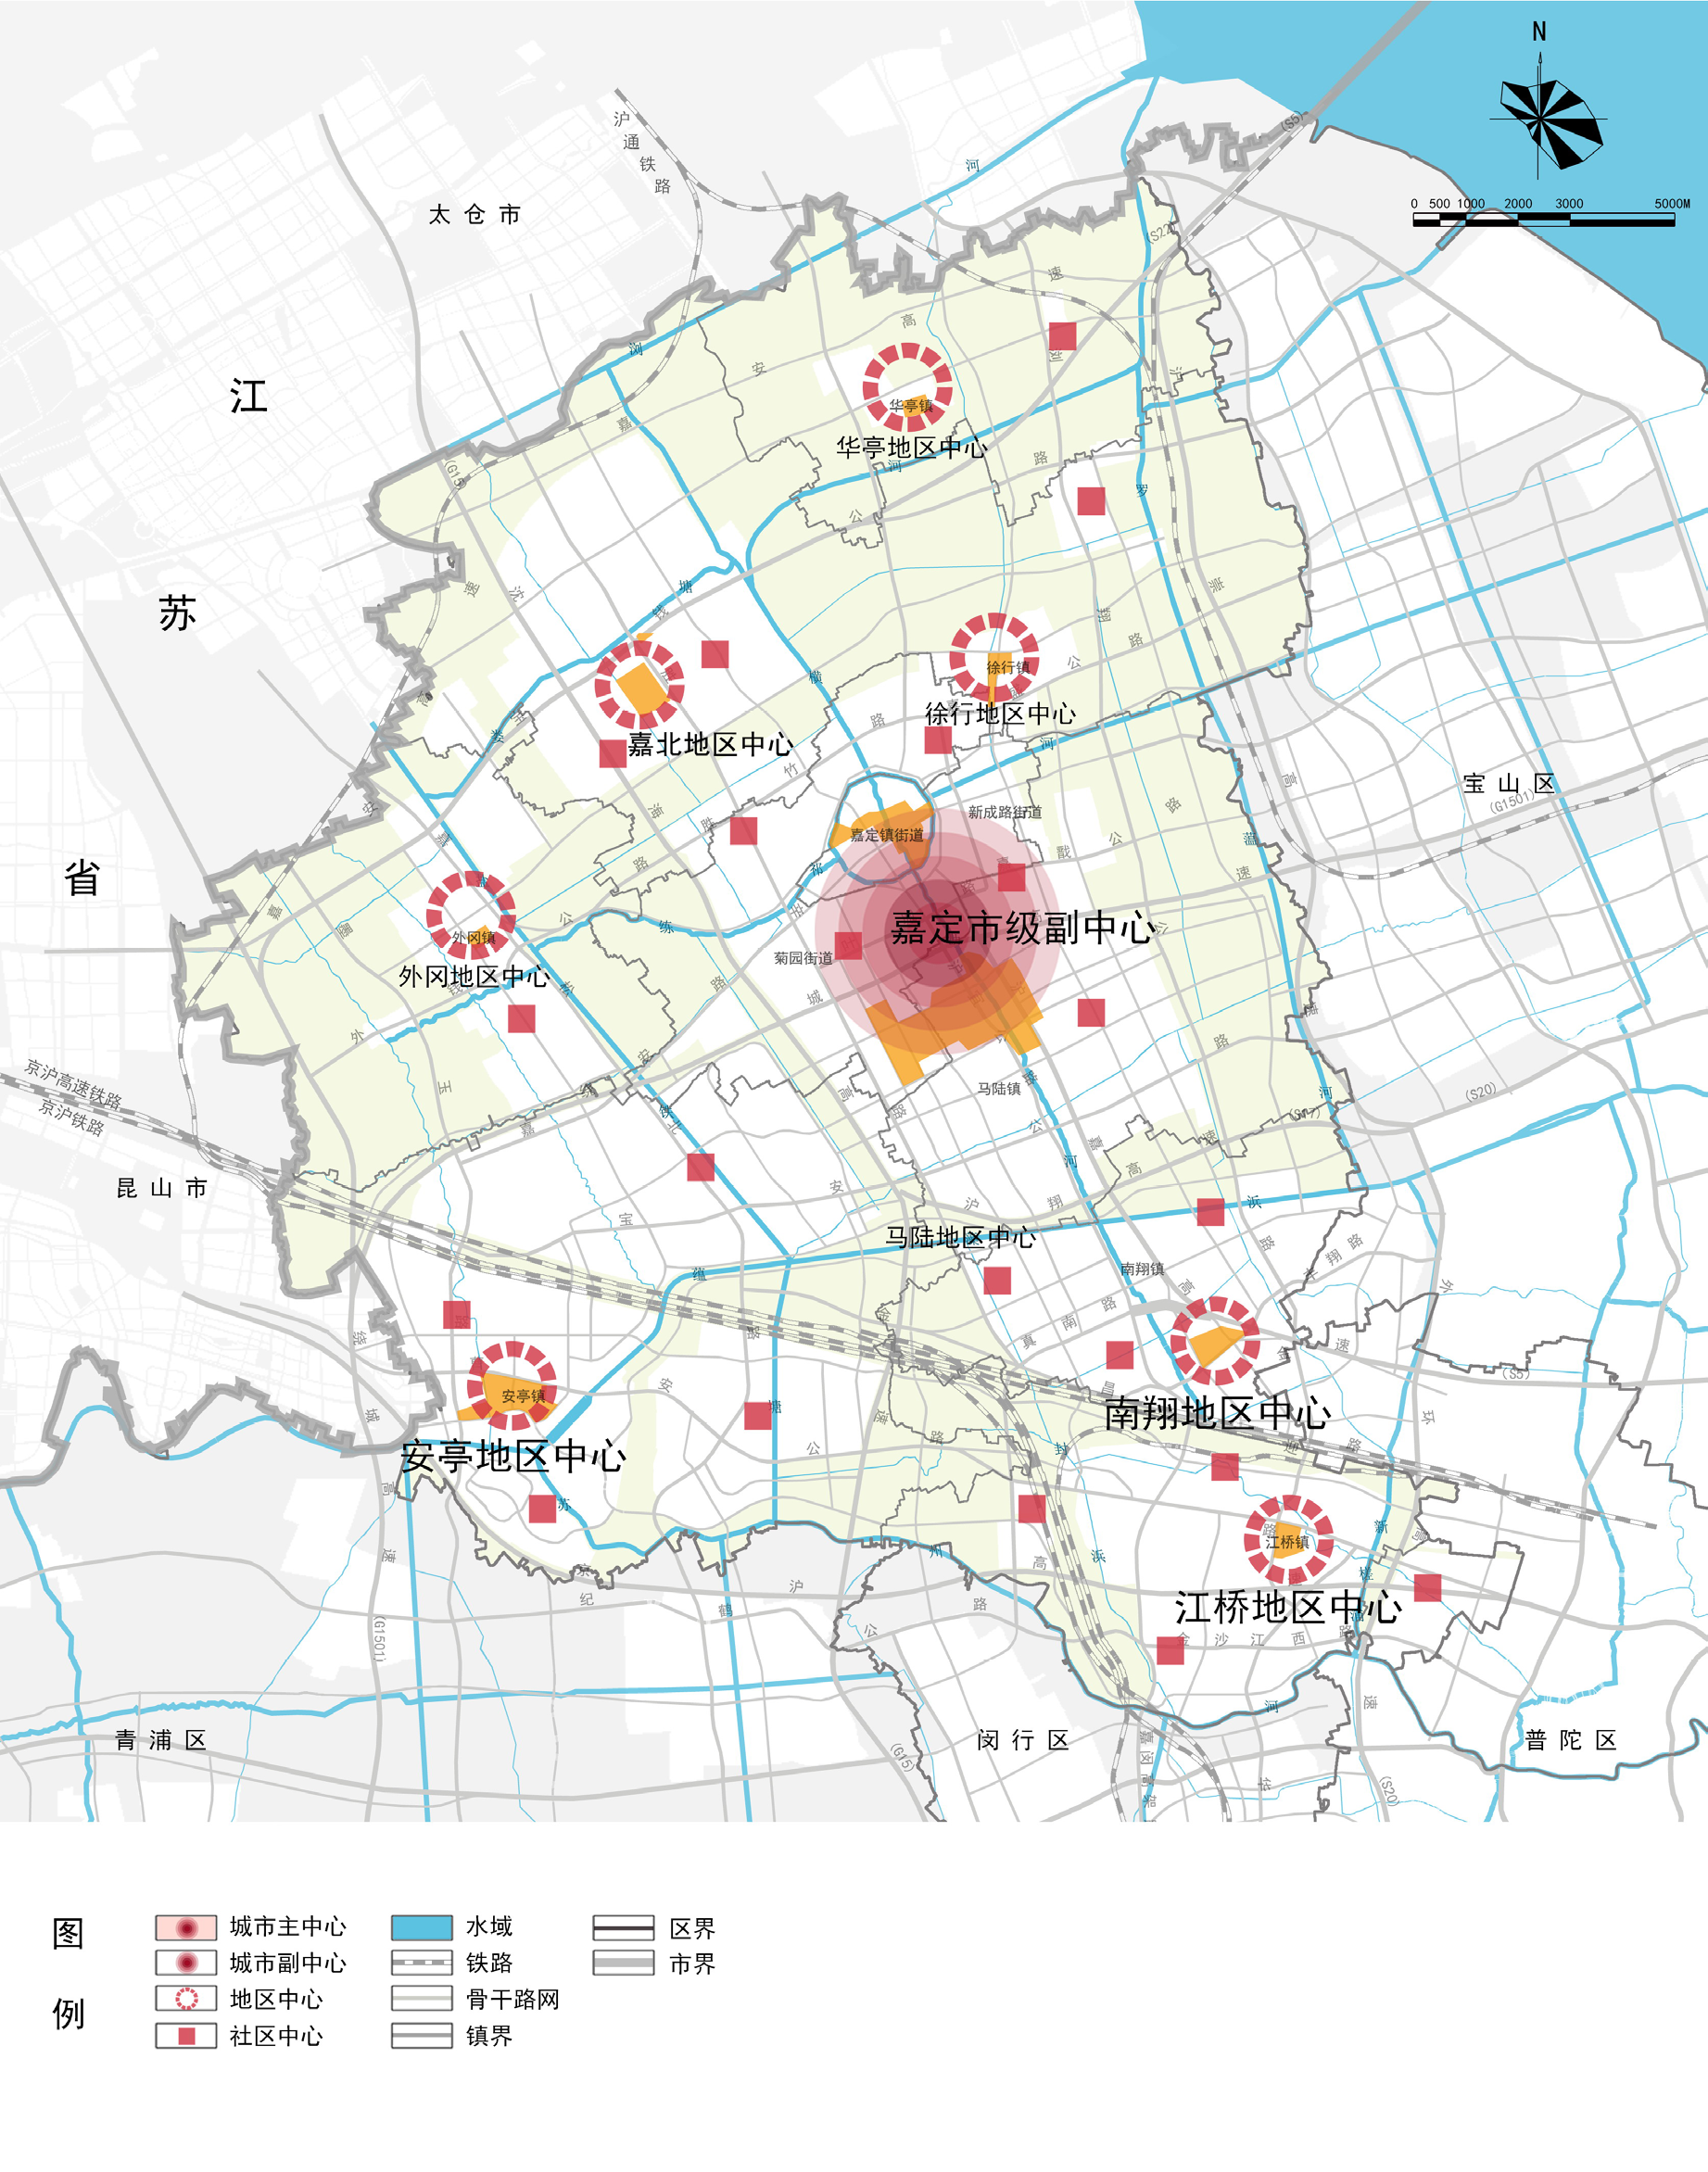 本文也算是给上海市嘉定区2035总规划划了一个重点,嘉定区的城镇分成